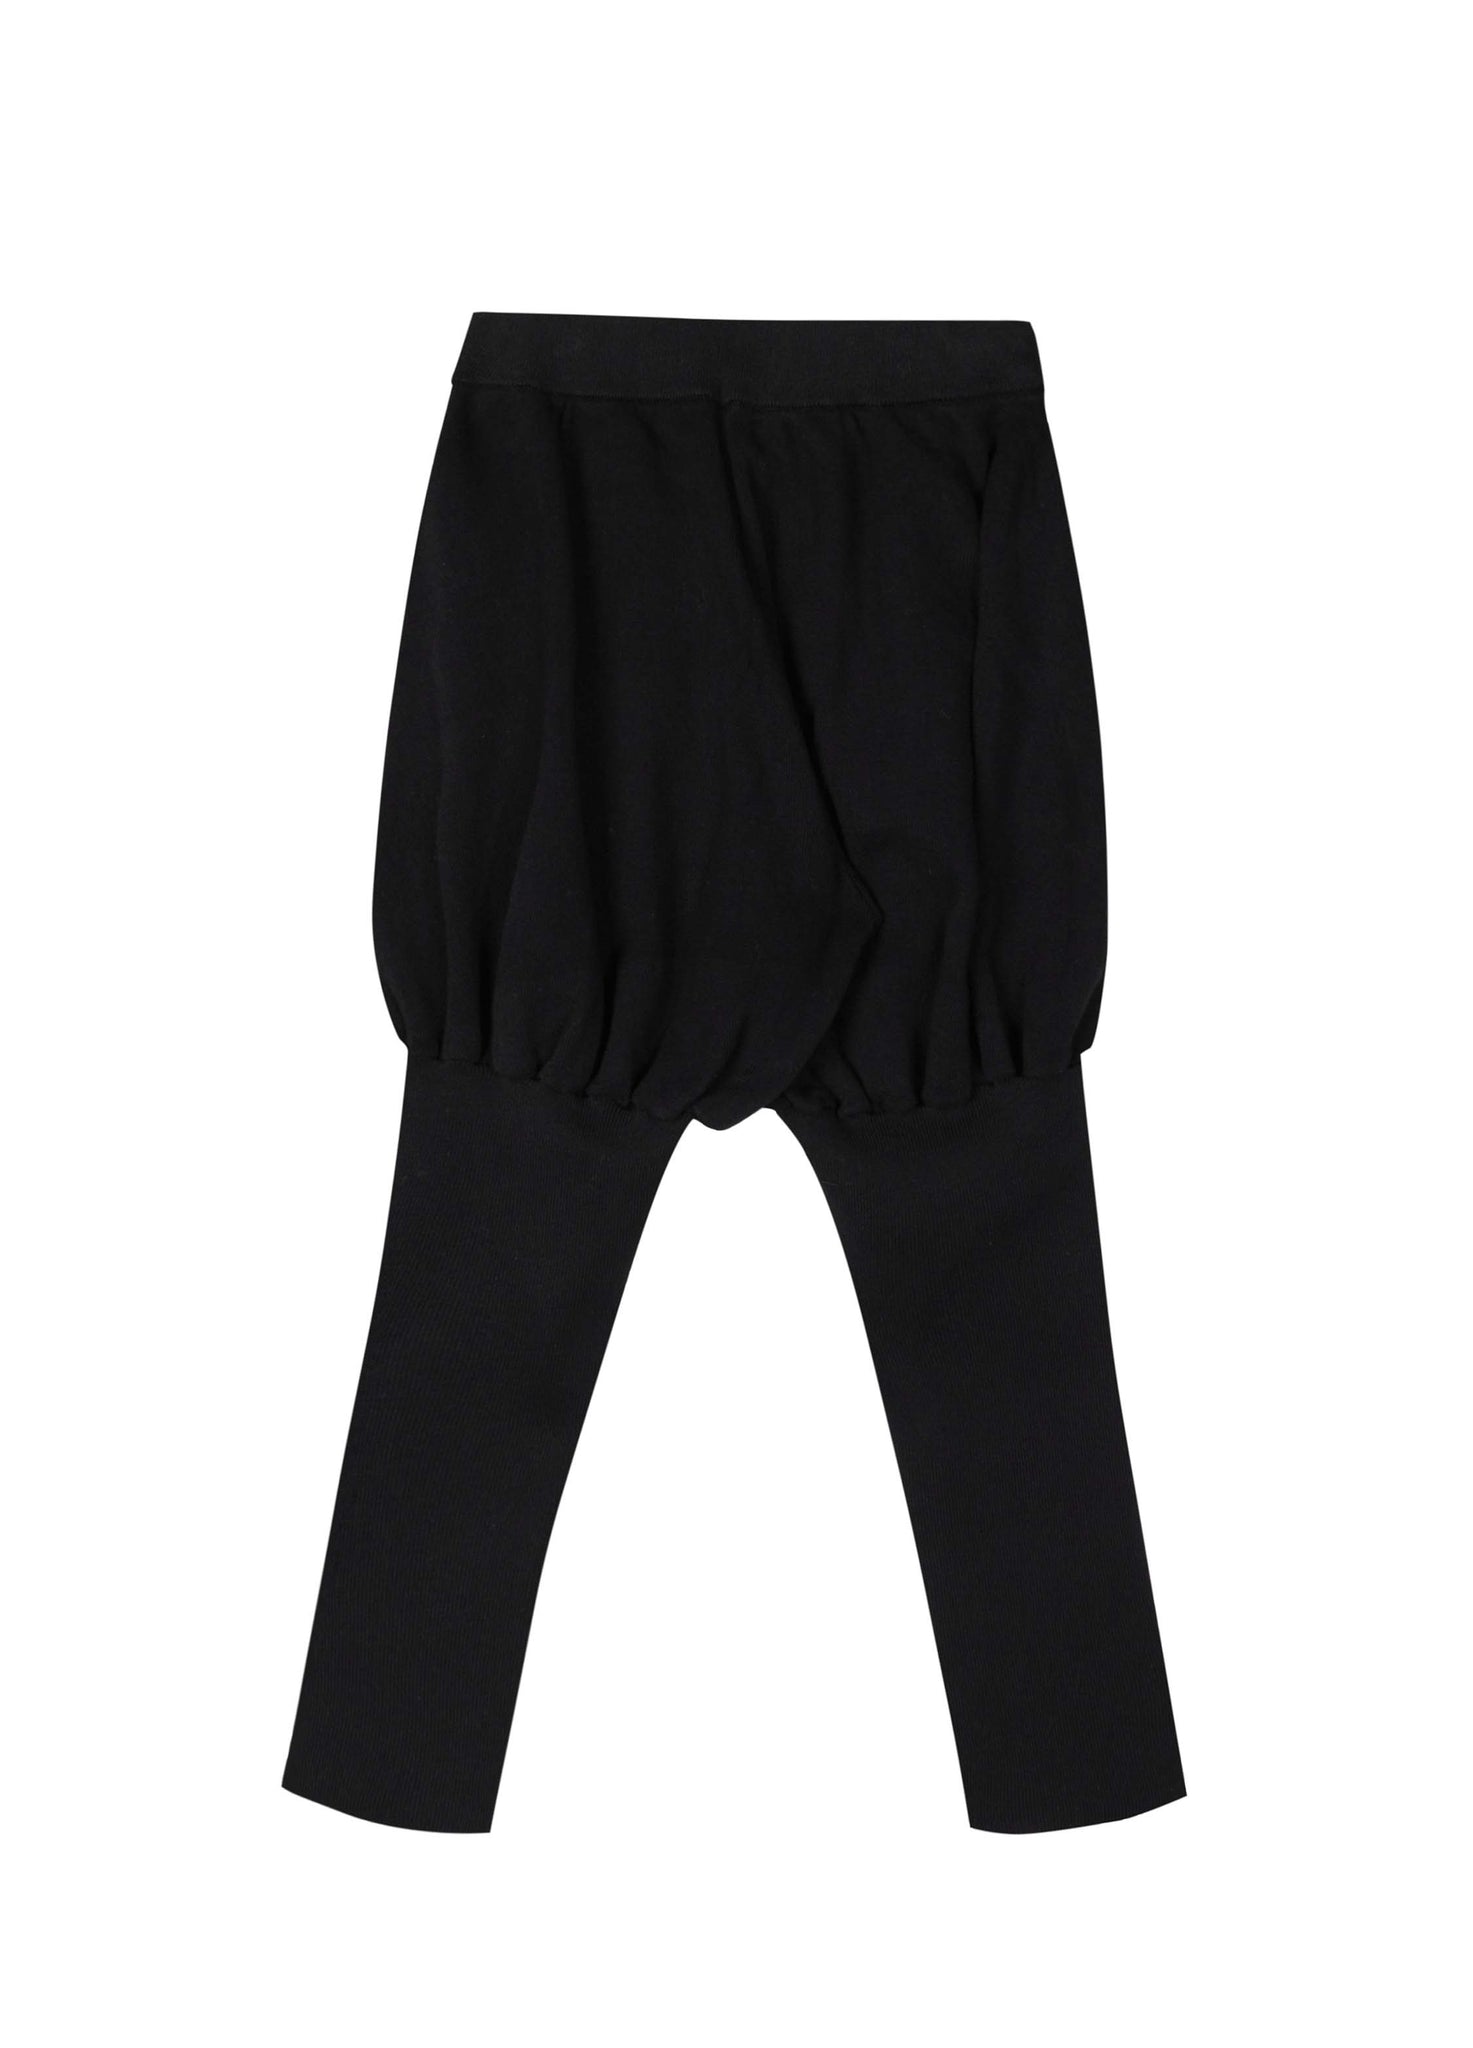 Pants / jnby by JNBY Slim Fit Elastic Pants